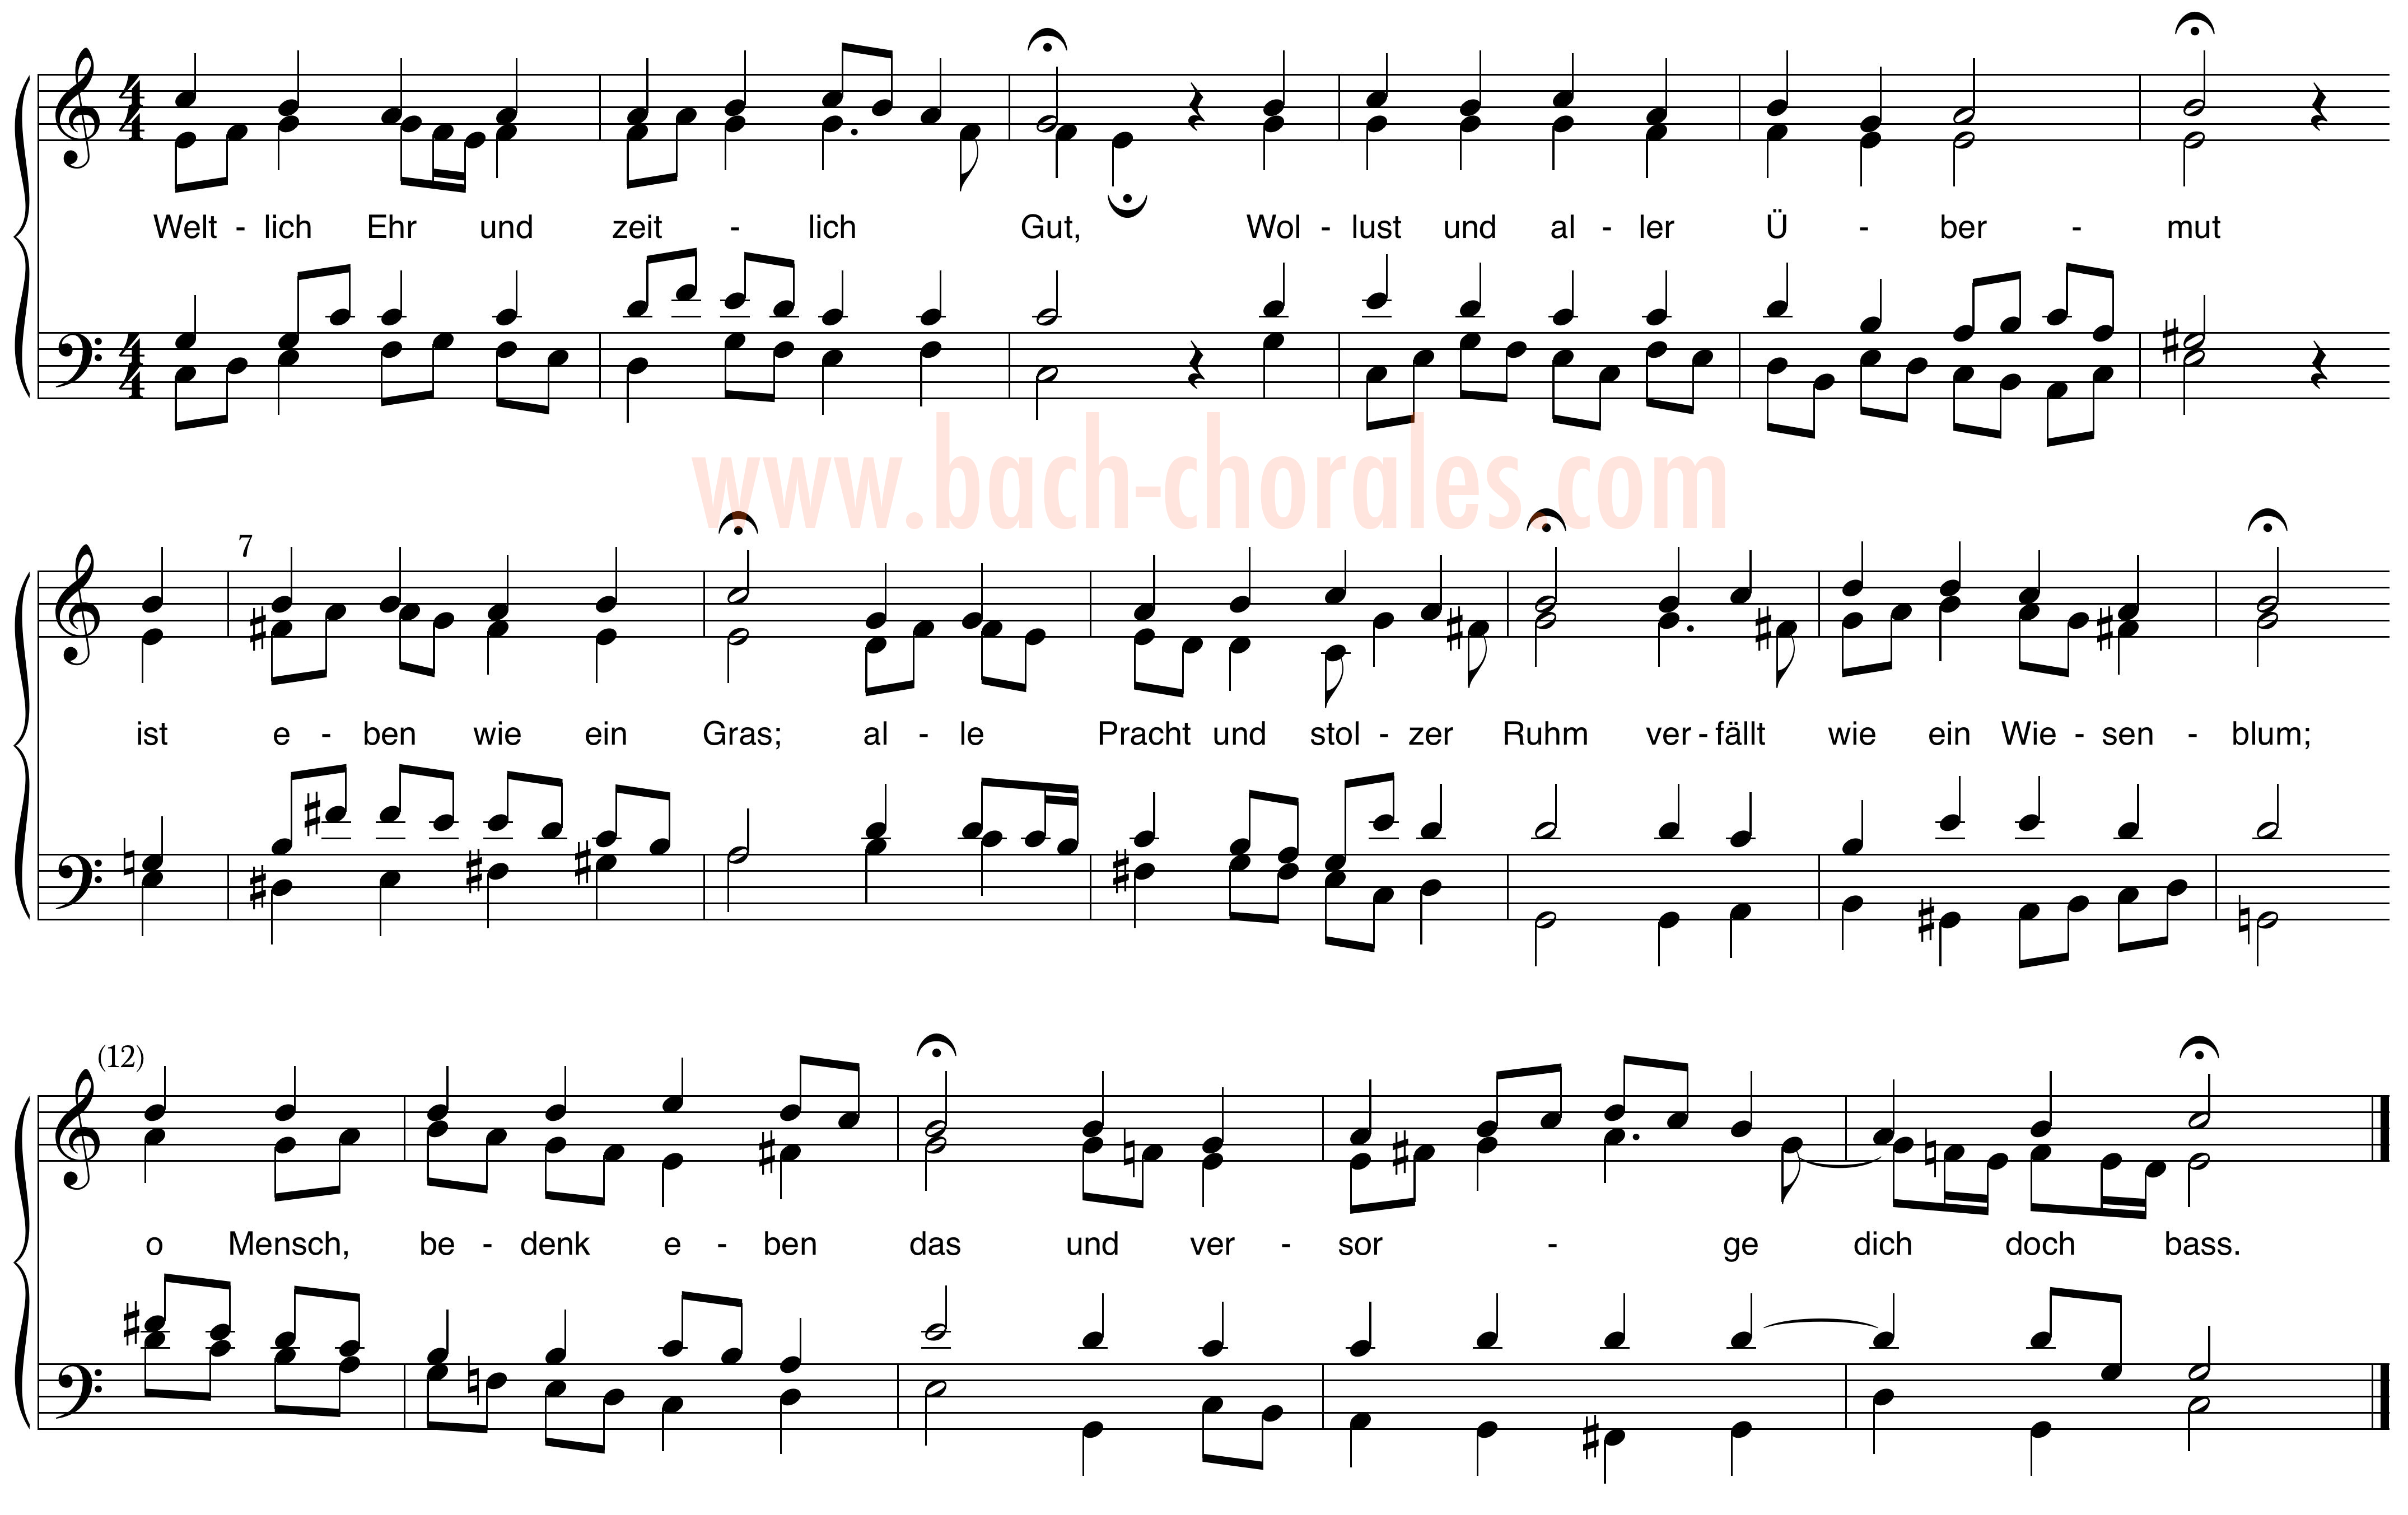 notenbeeld BWV 426 op https://www.bach-chorales.com/